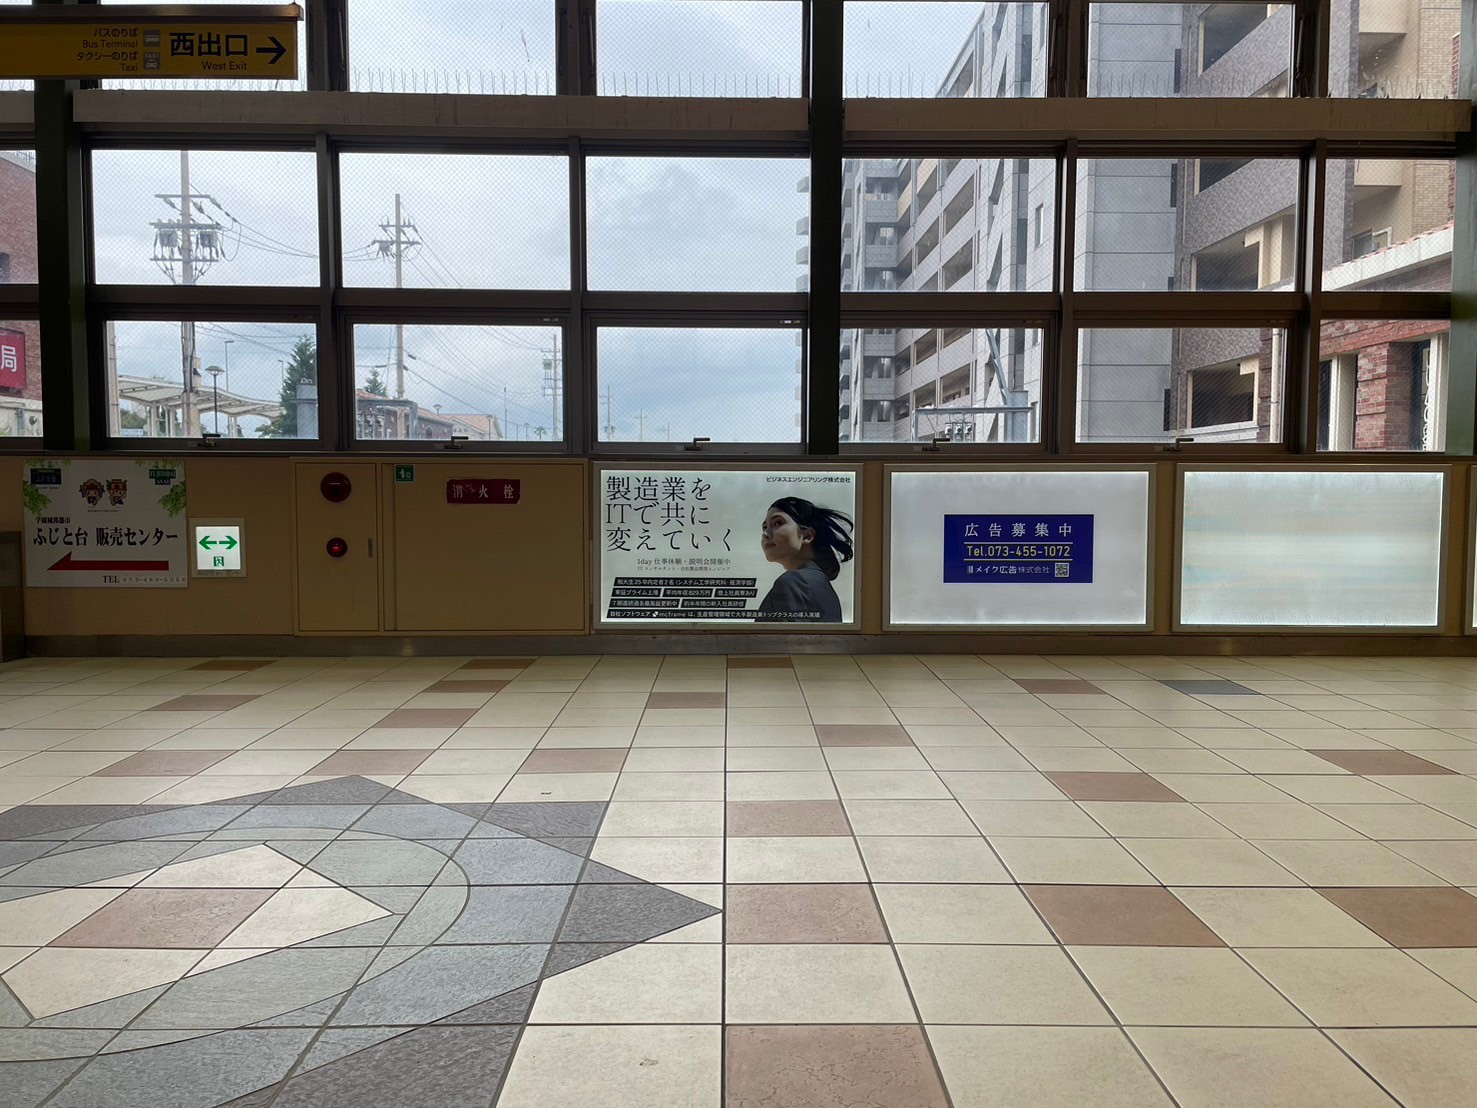 和歌山大学前駅に設置されたビジネスエンジニアリング様の看板広告